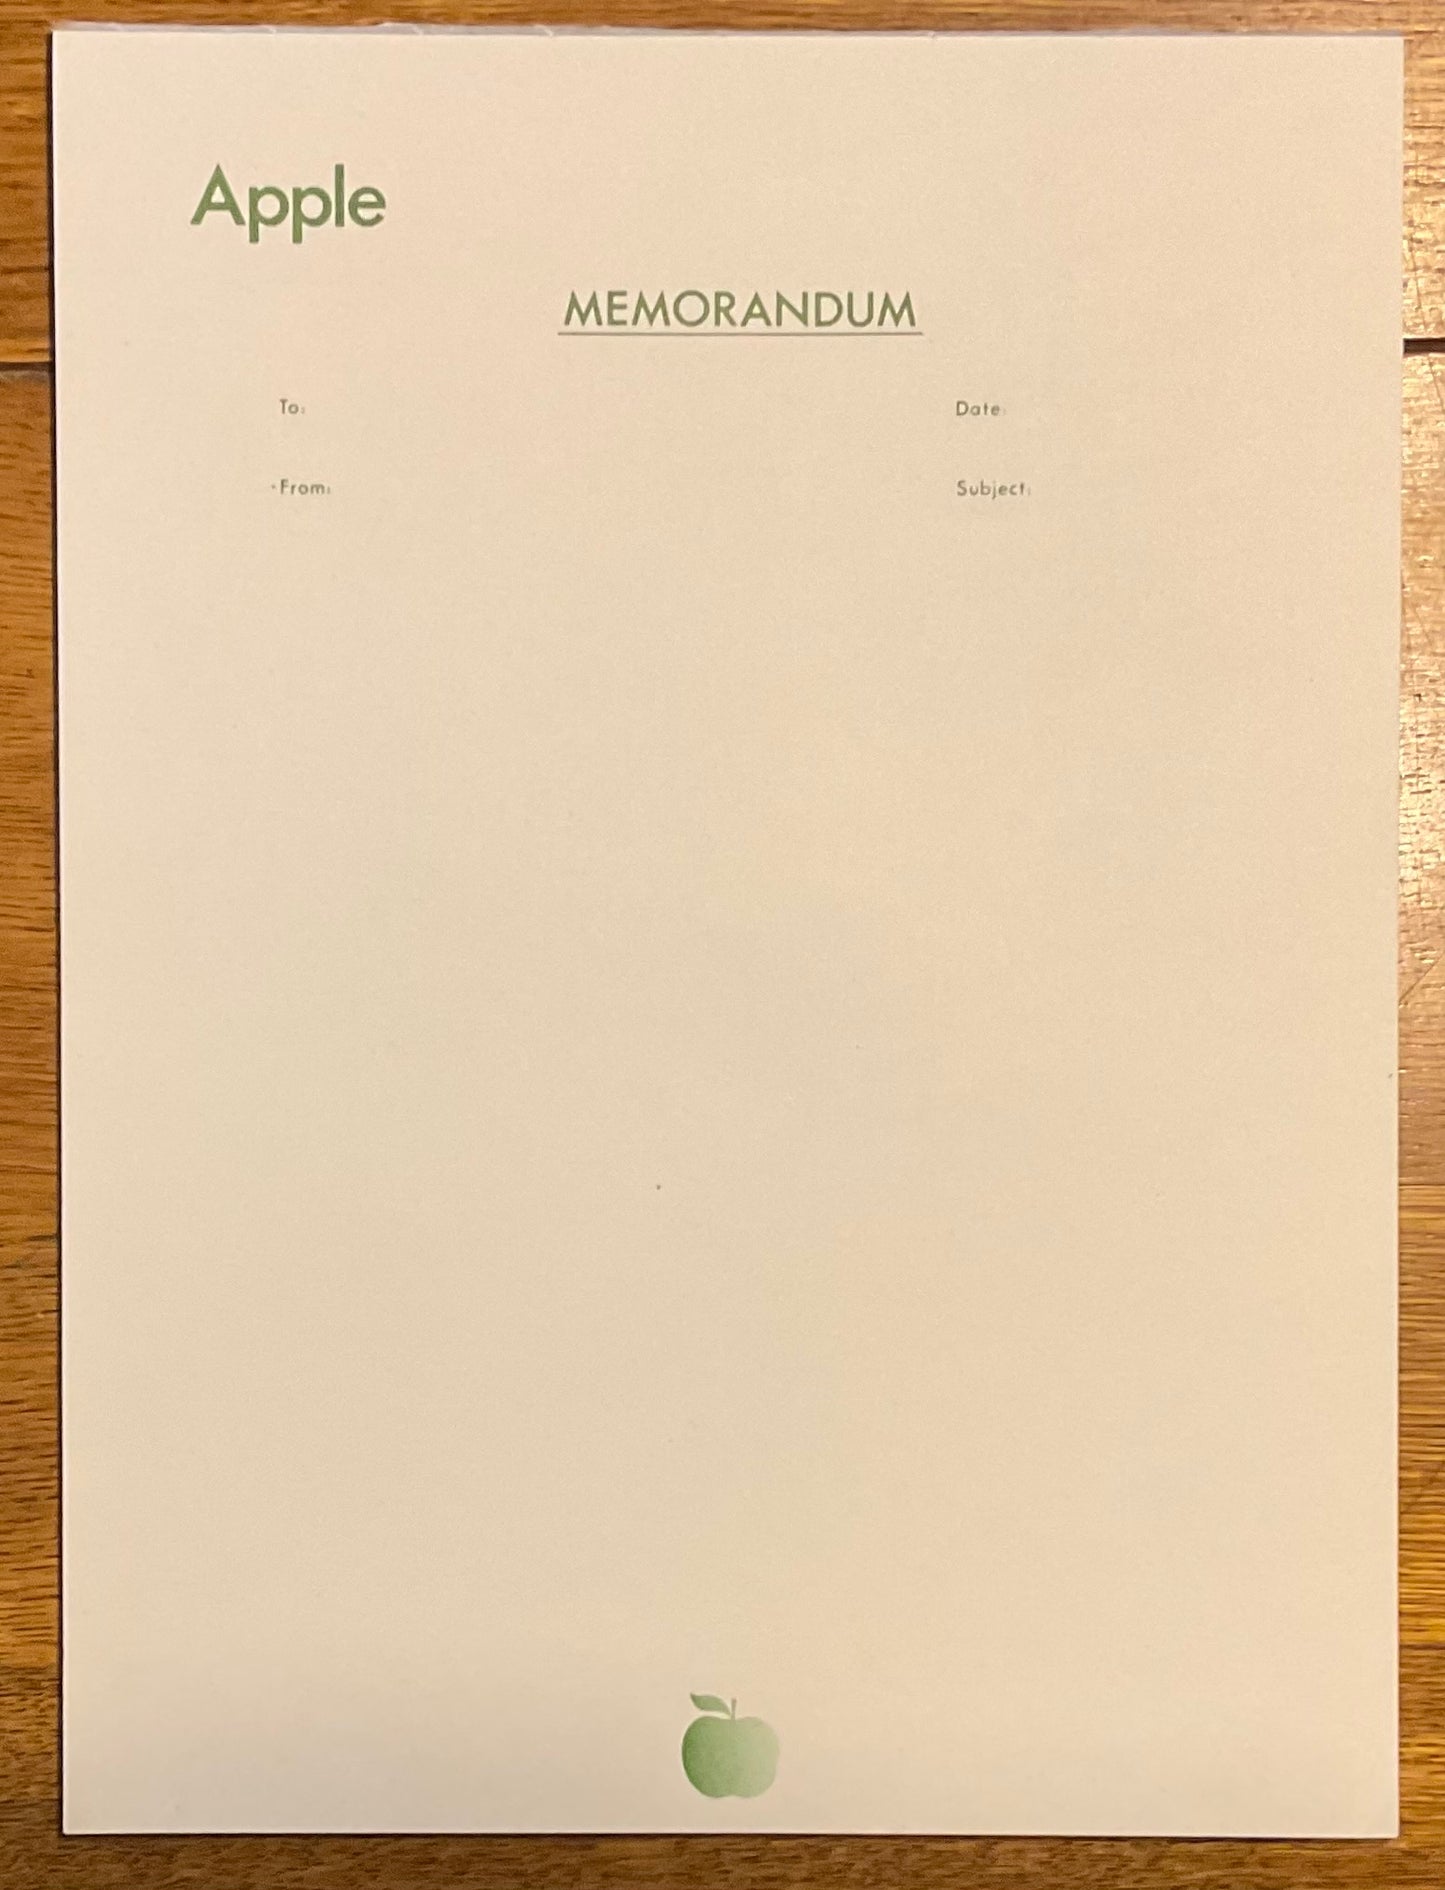 Beatles Original Apple Memo Notepaper